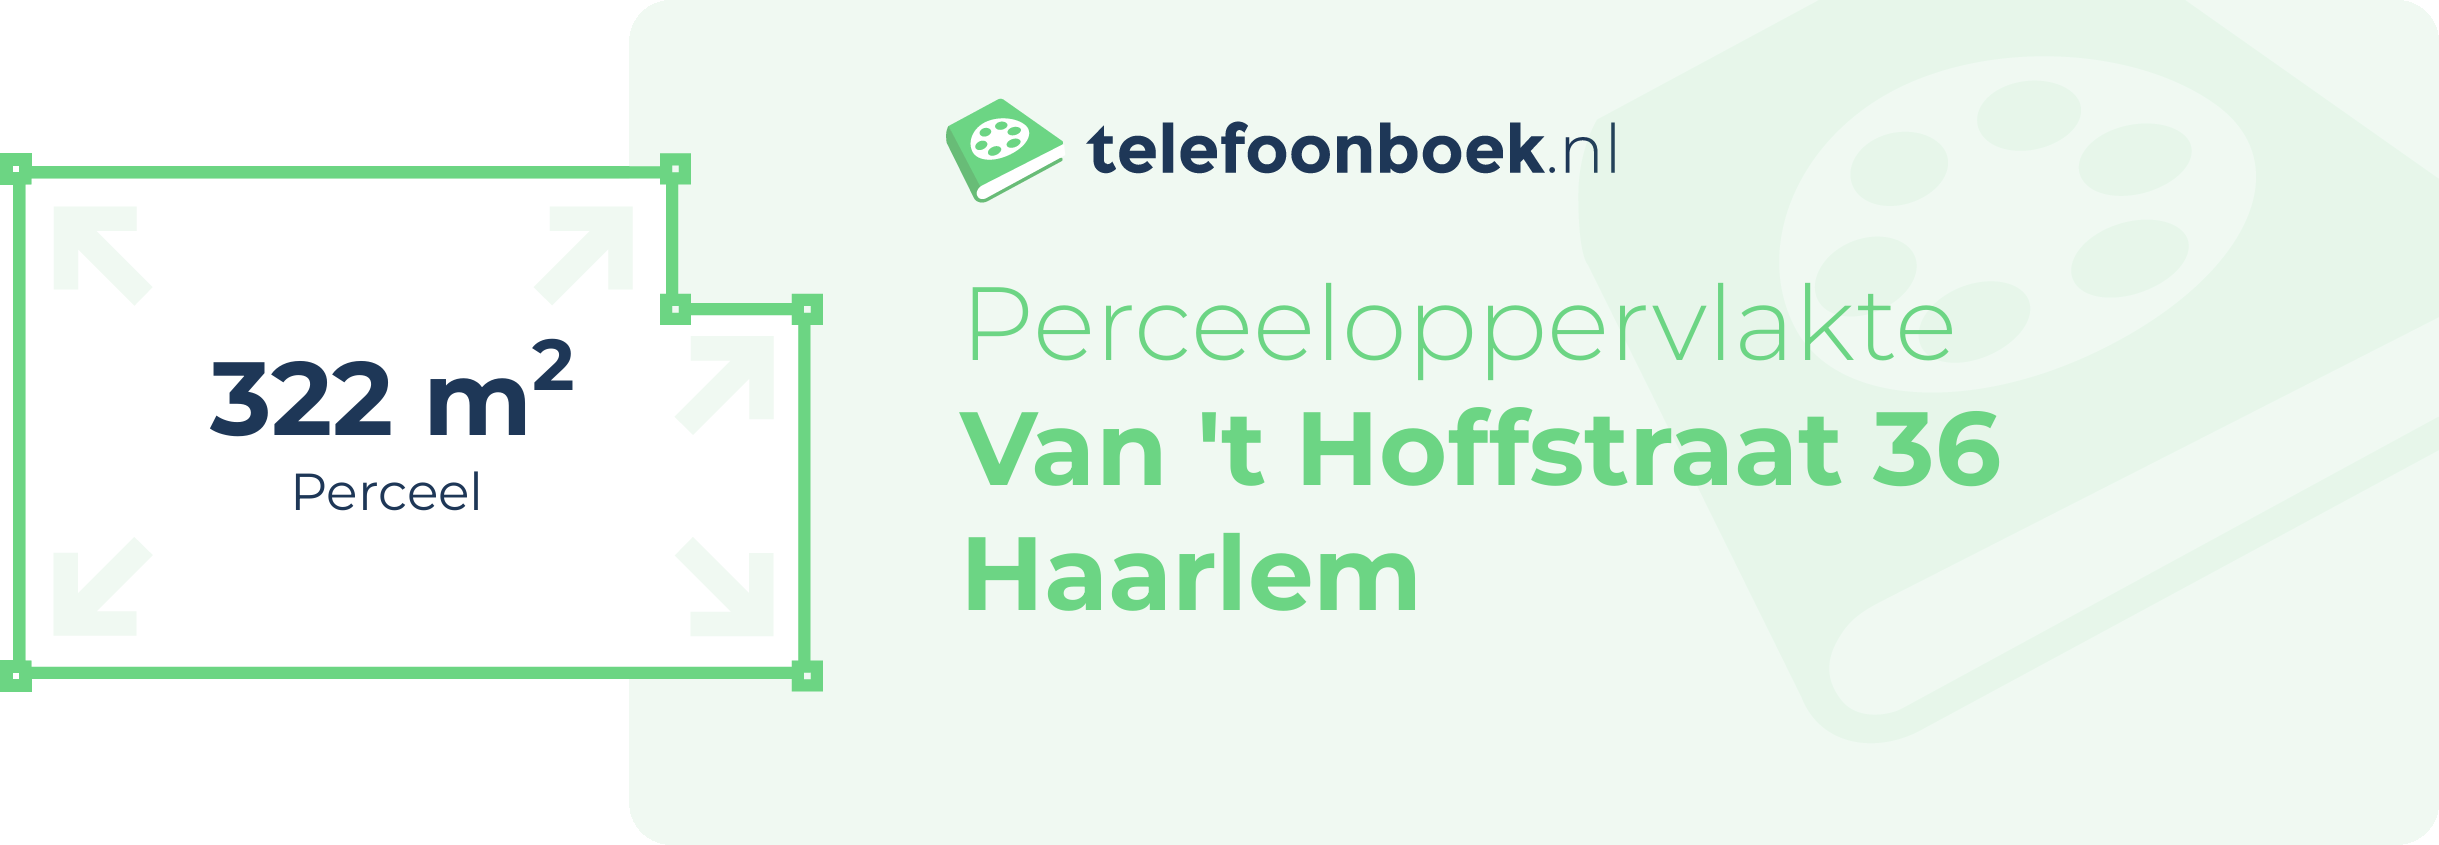 Perceeloppervlakte Van 't Hoffstraat 36 Haarlem